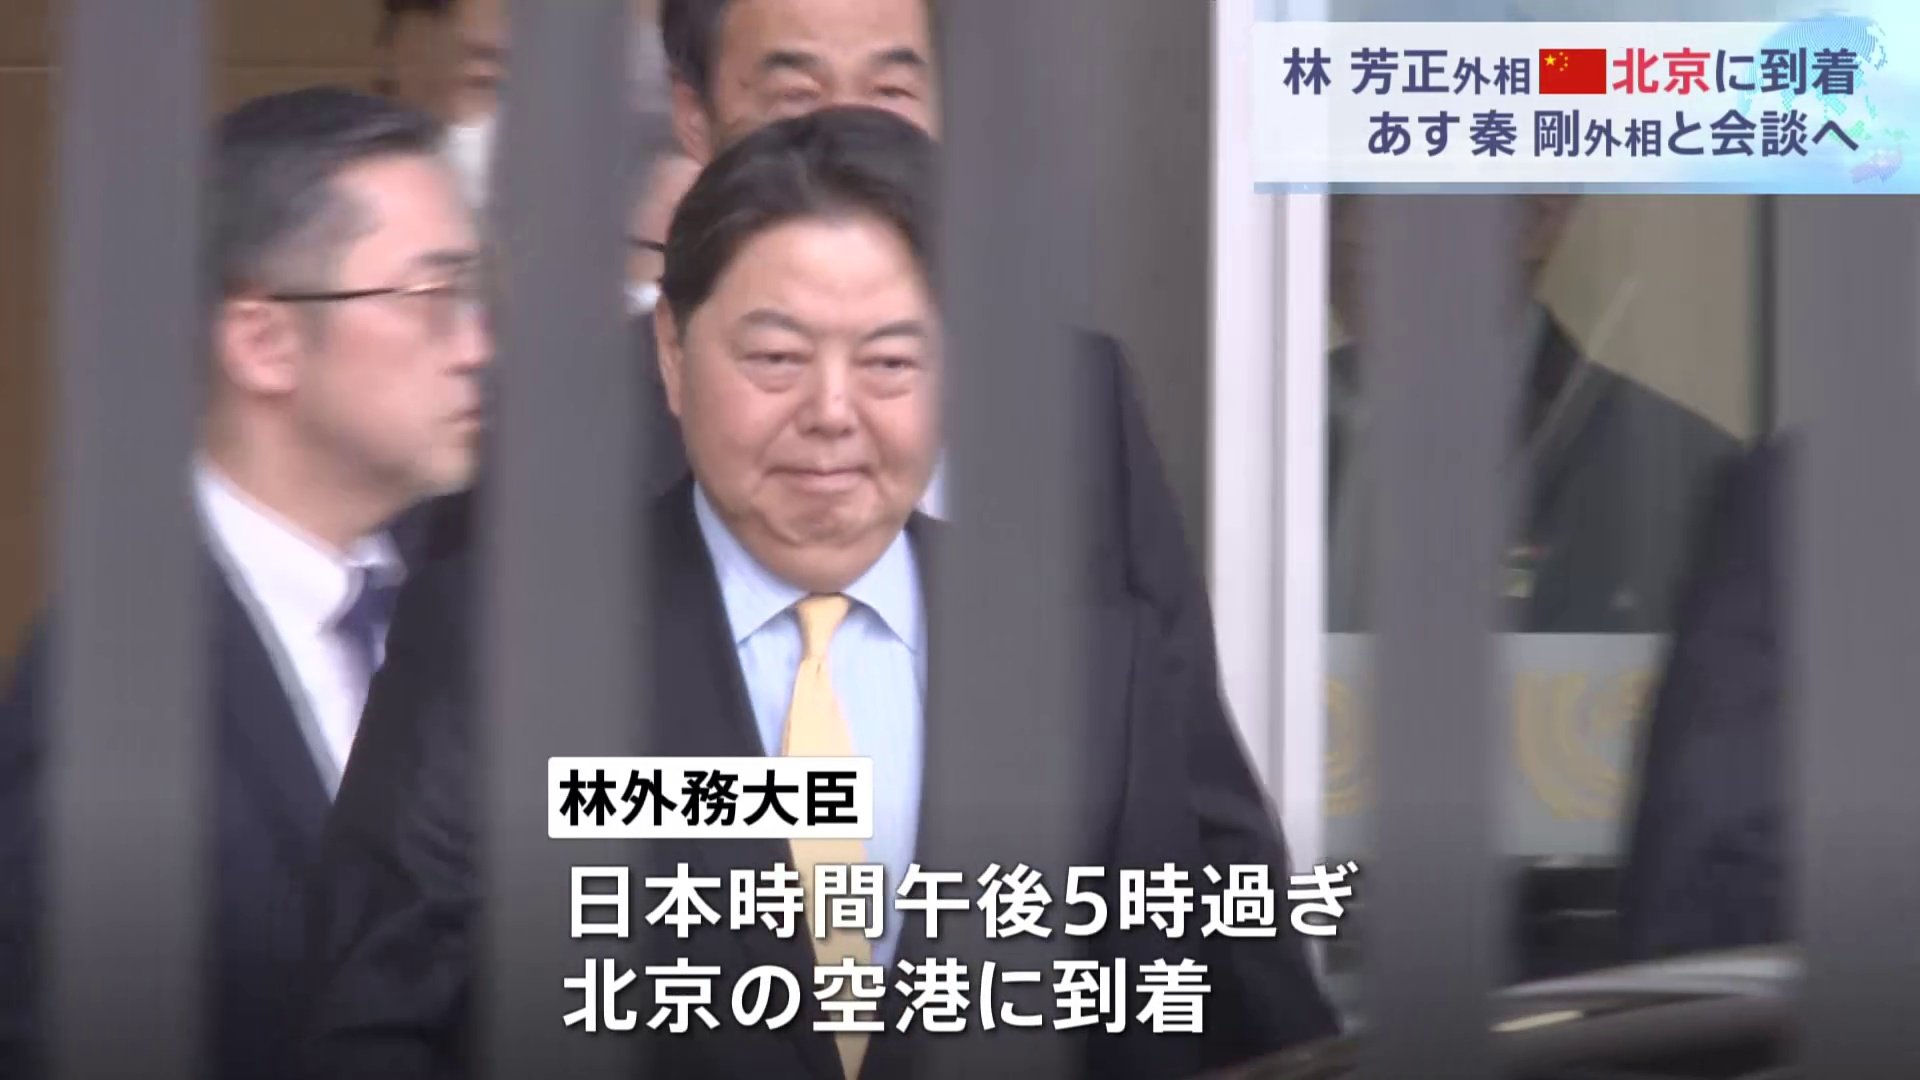 林外務大臣が北京に到着、2日に中国・秦剛外相と会談へ　拘束の日本人男性など懸案について議論